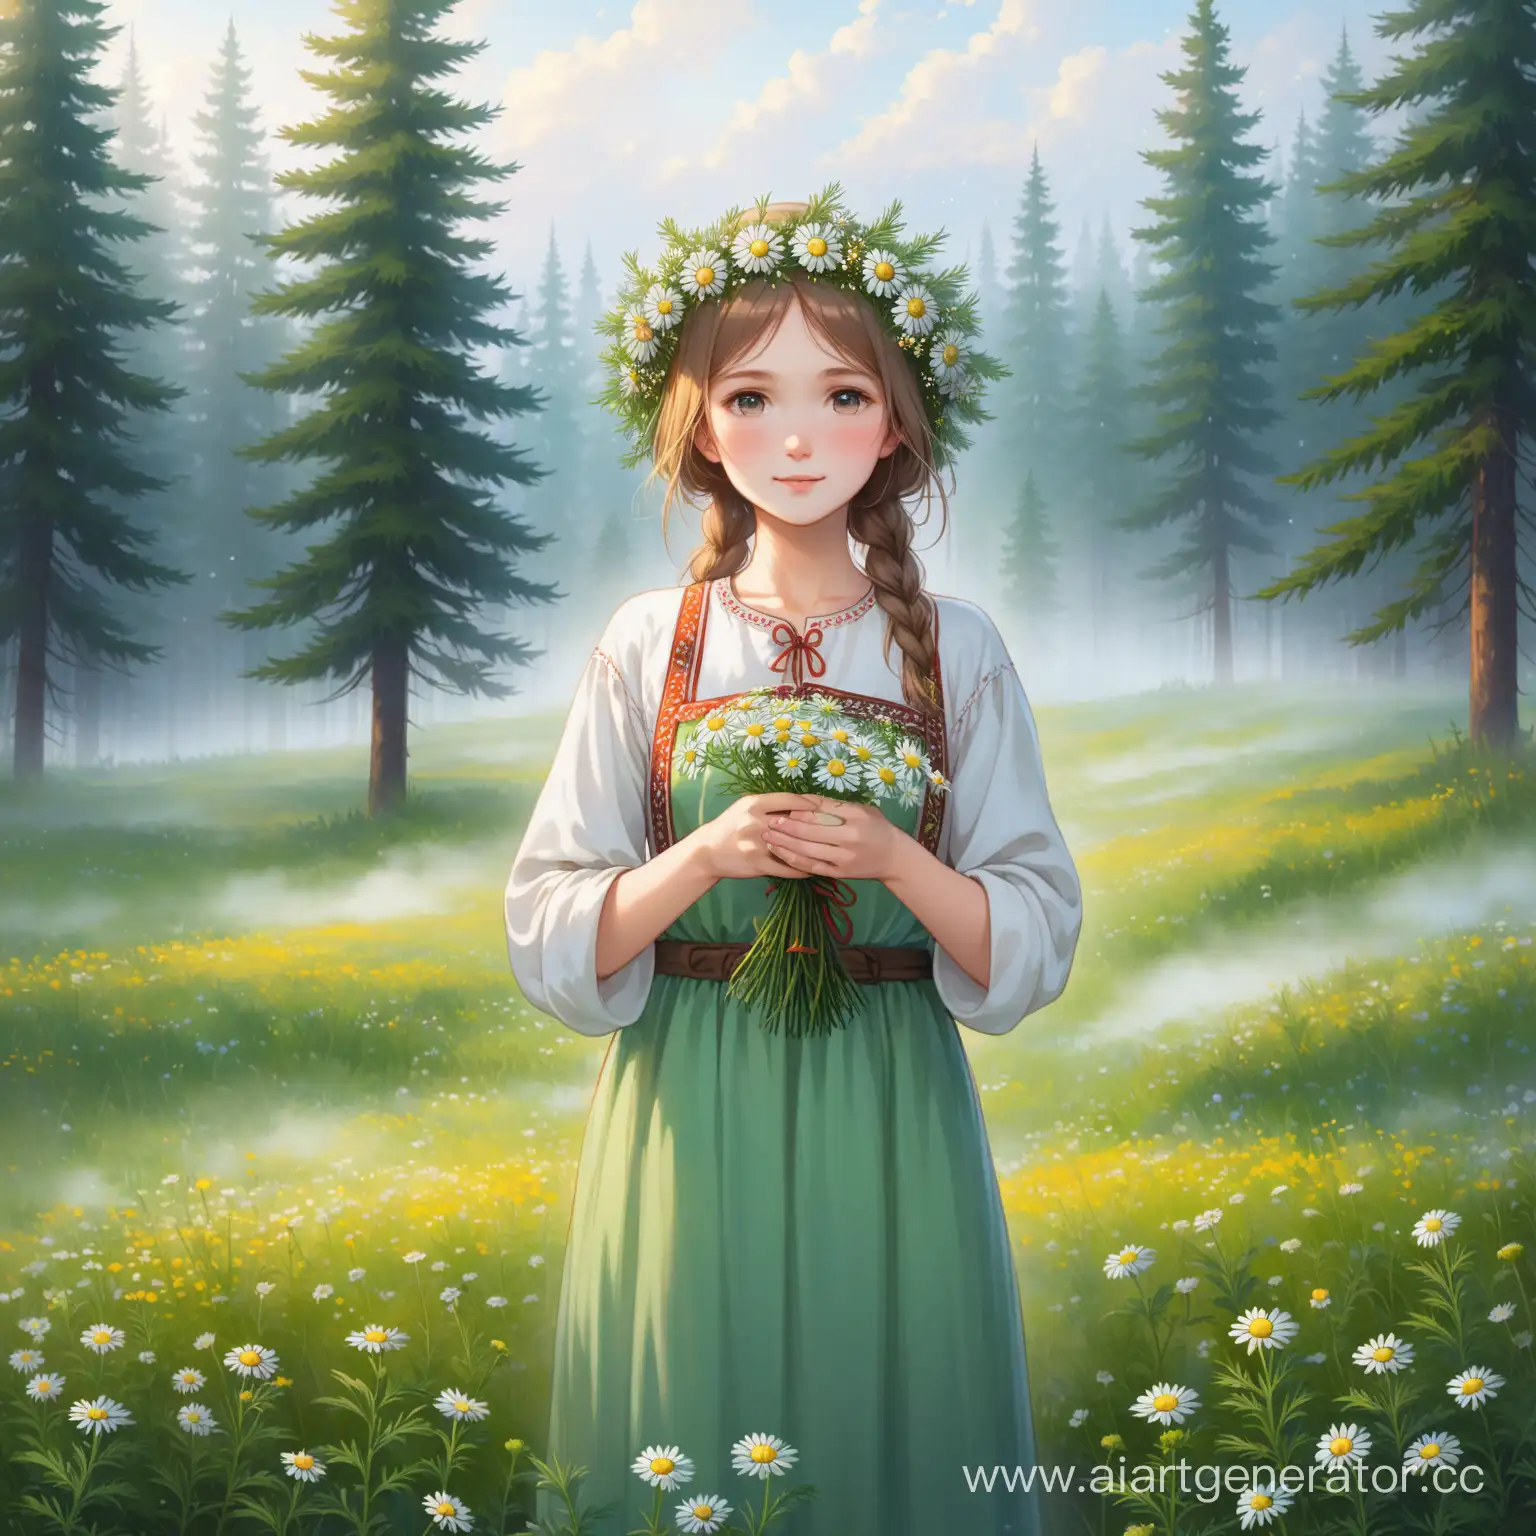 Русская девушка крестьянка в национальной одежде с цветочным венком на голове стоит на цветочной поляне окружённой еловым лесом и держит в руках ромашку. Атмосфера туманного леса